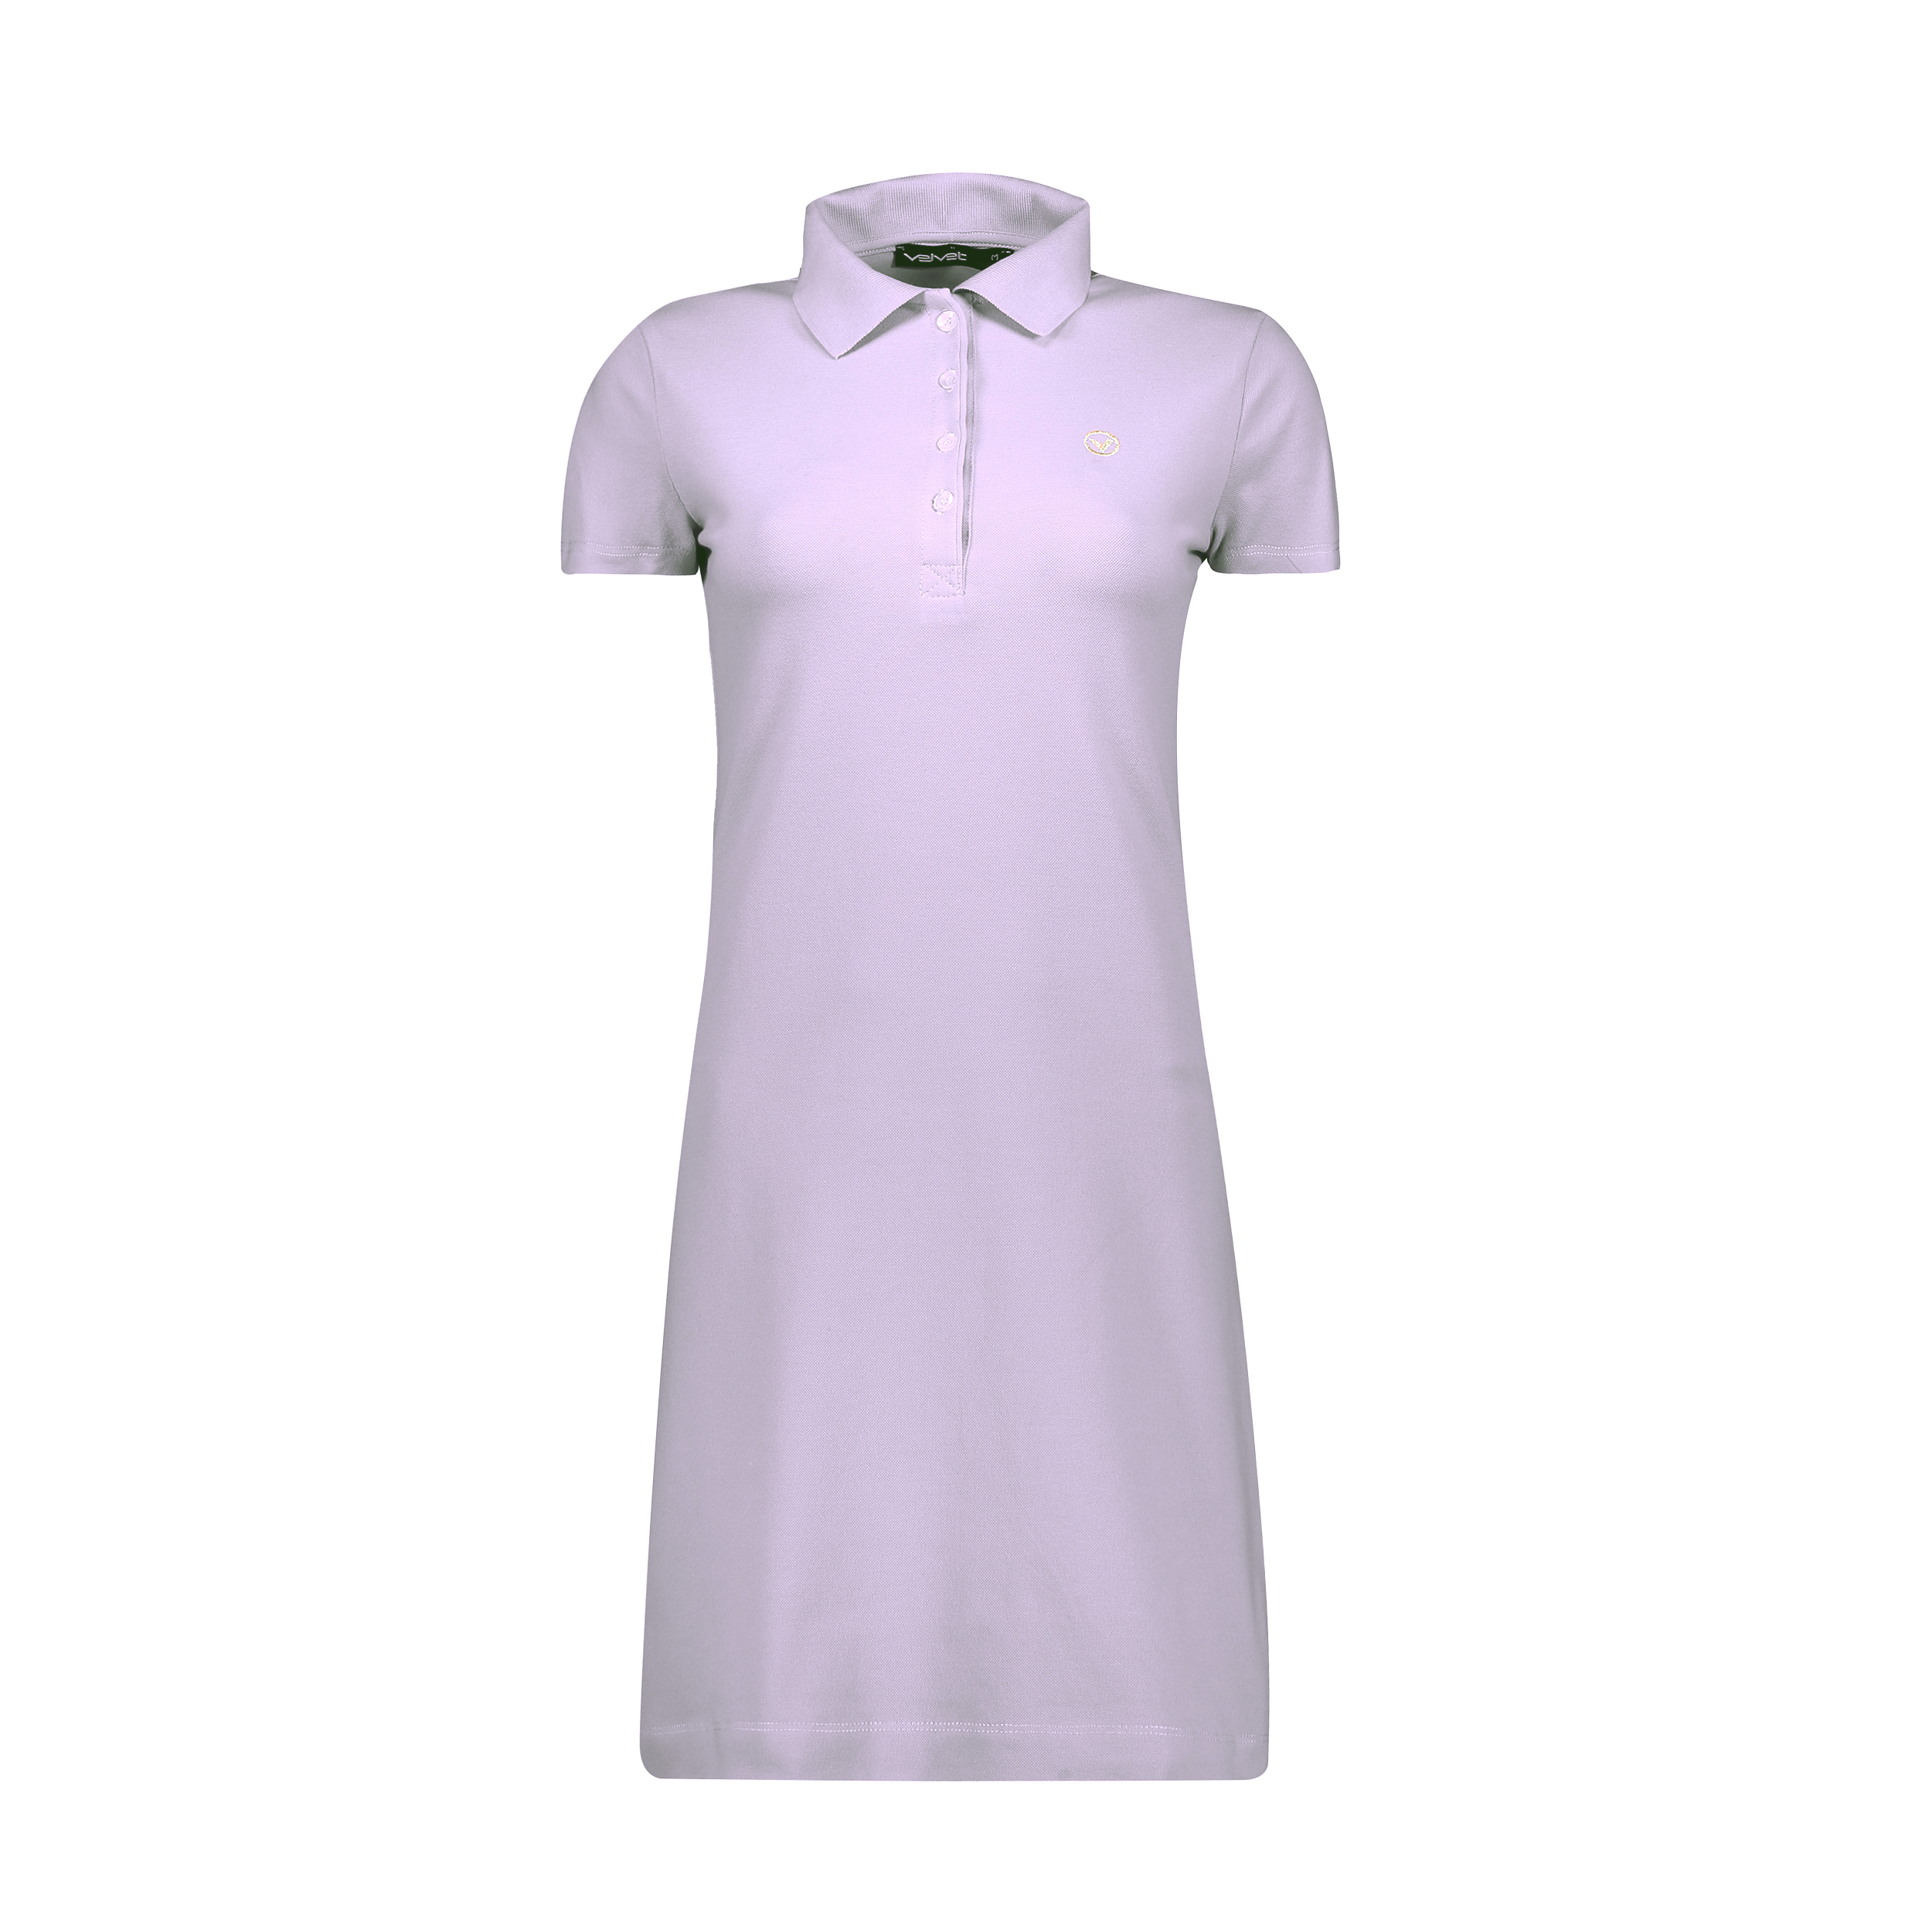 نکته خرید - قیمت روز پیراهن زنانه ولوت ریپابلیک کد N9810043-95 خرید